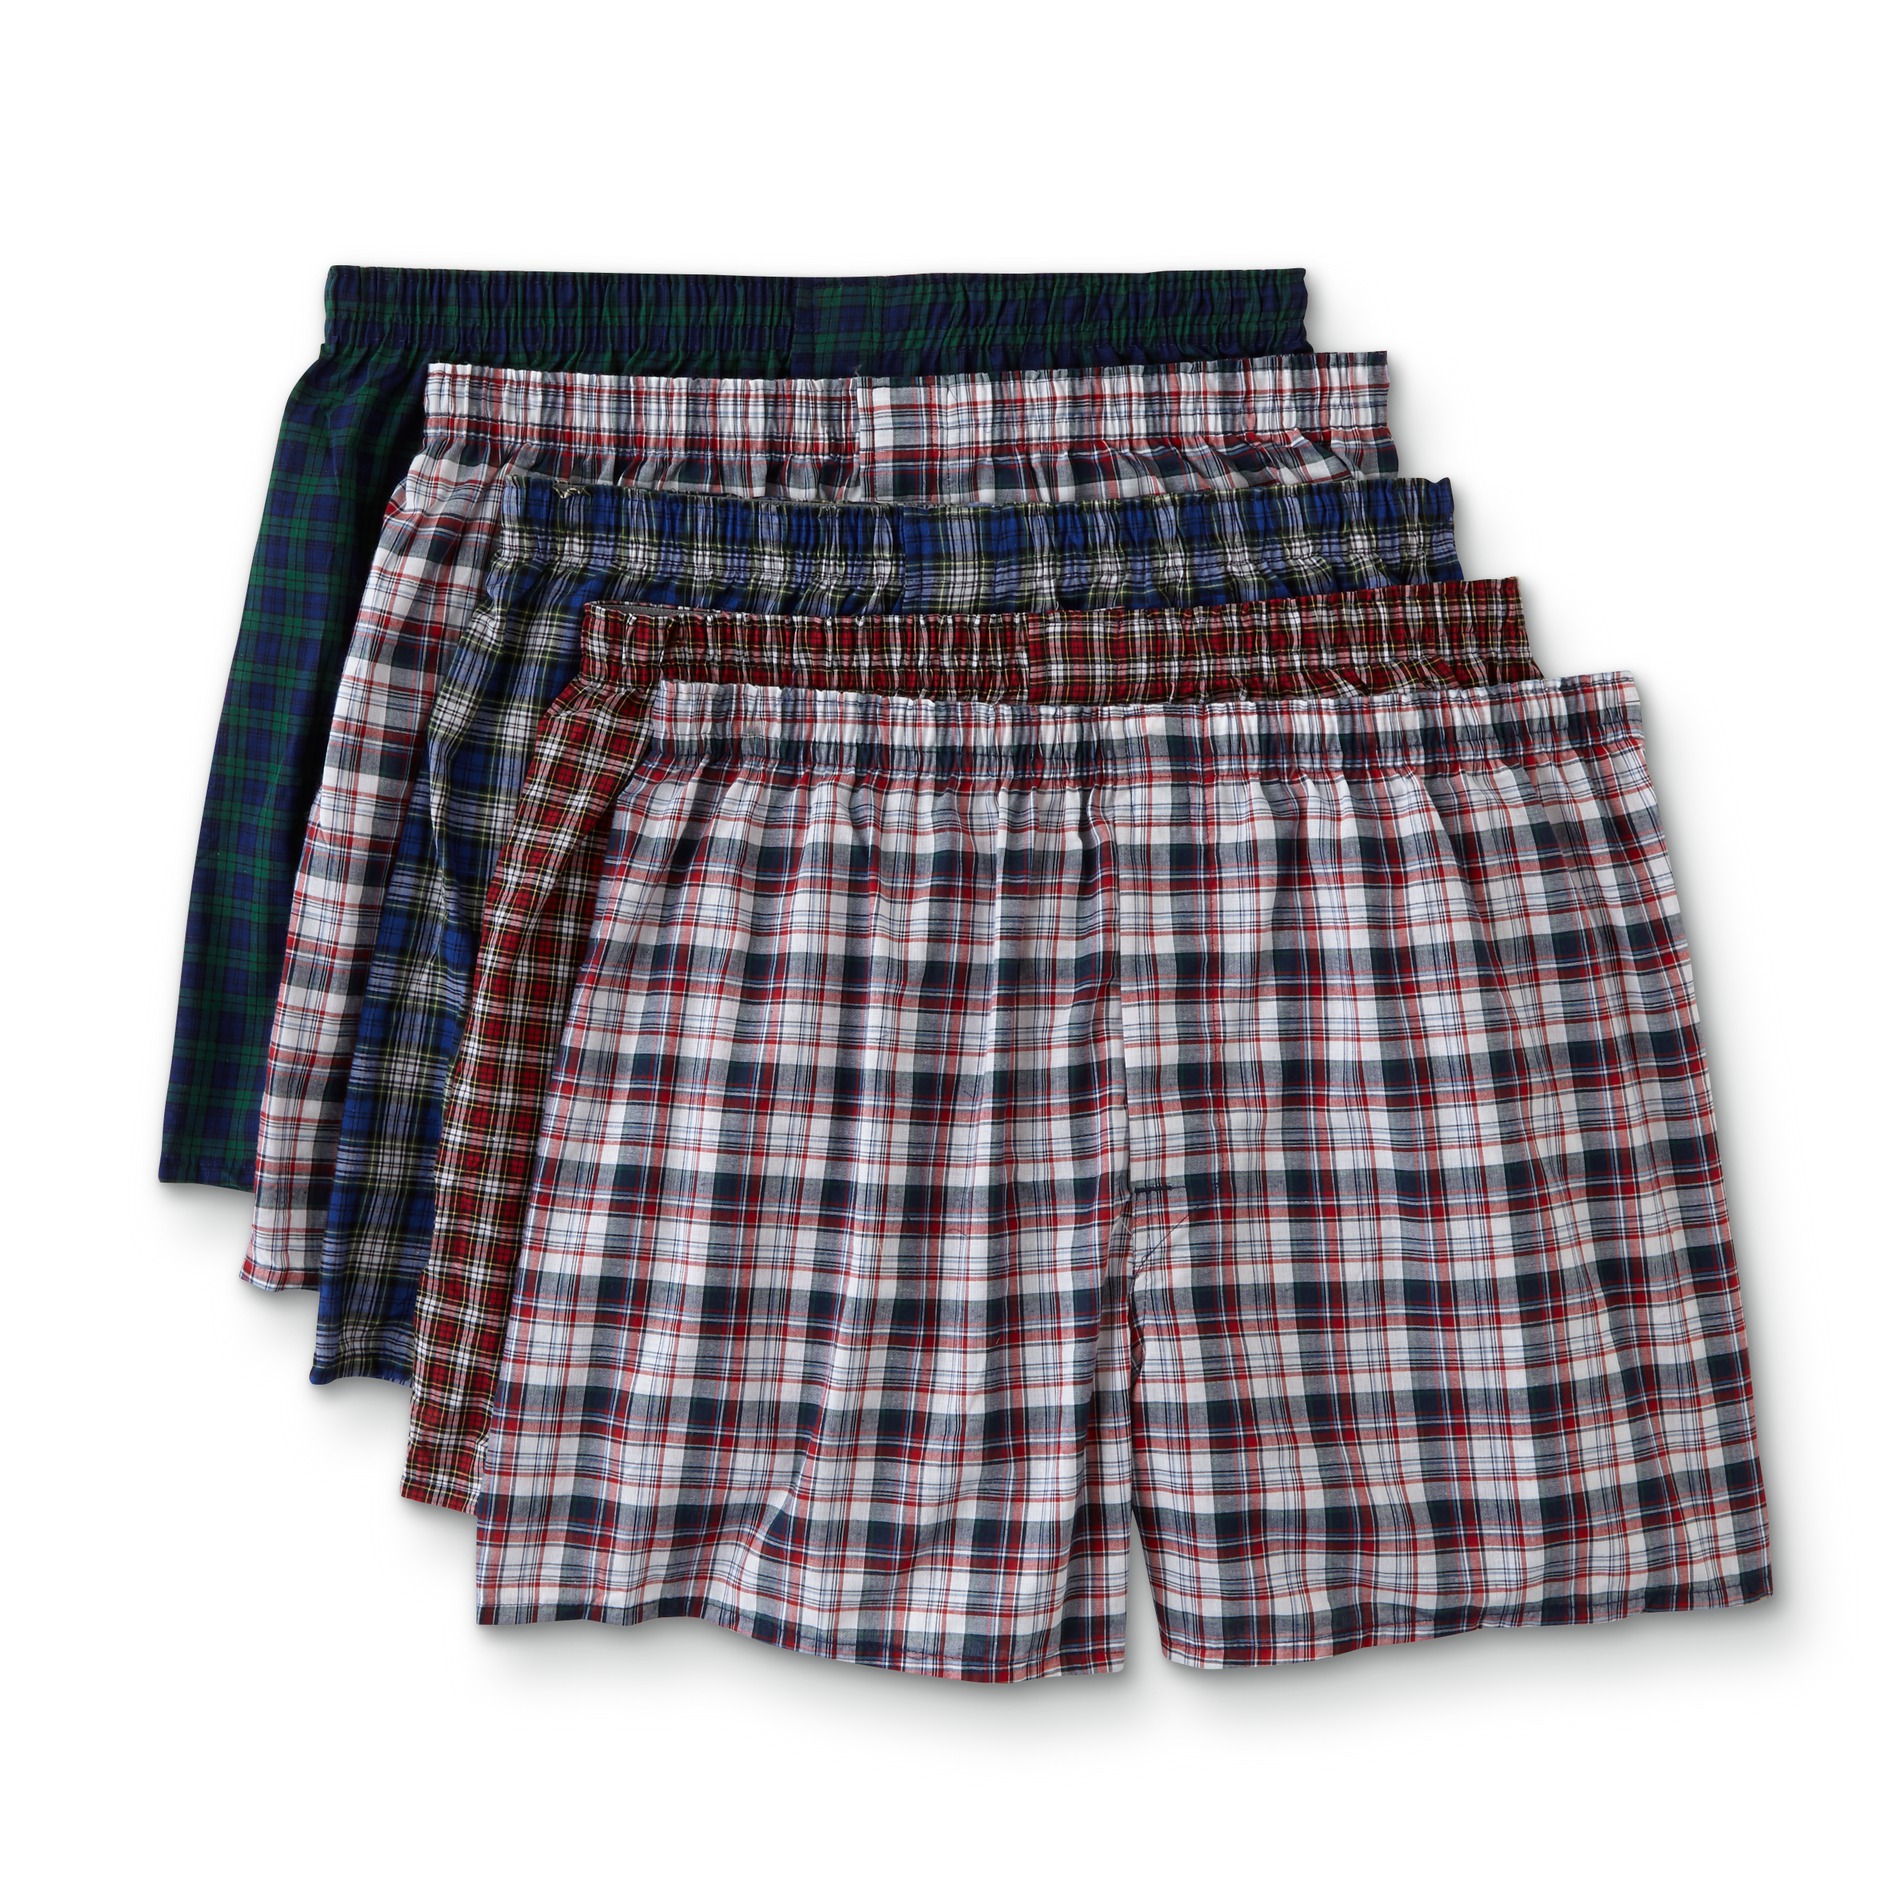 Hanes Men's 5-Pack Boxer Shorts-Assorted Plaid Colors